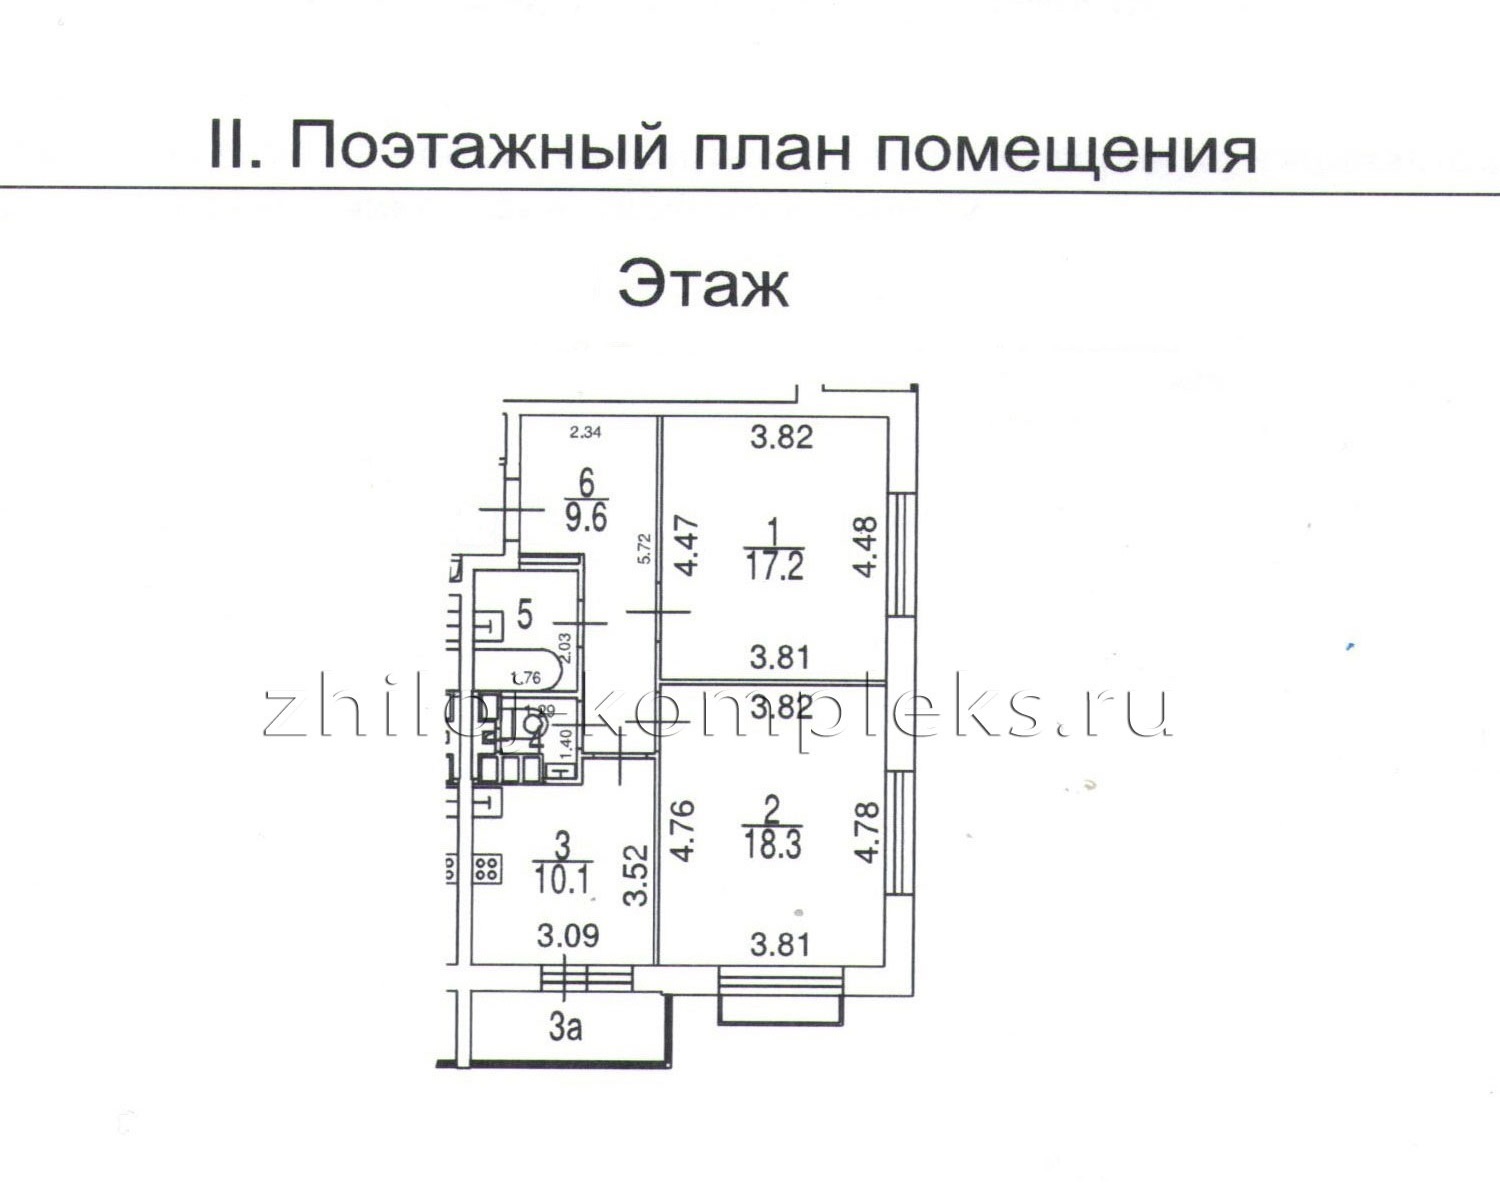 Поэтажный план помещения